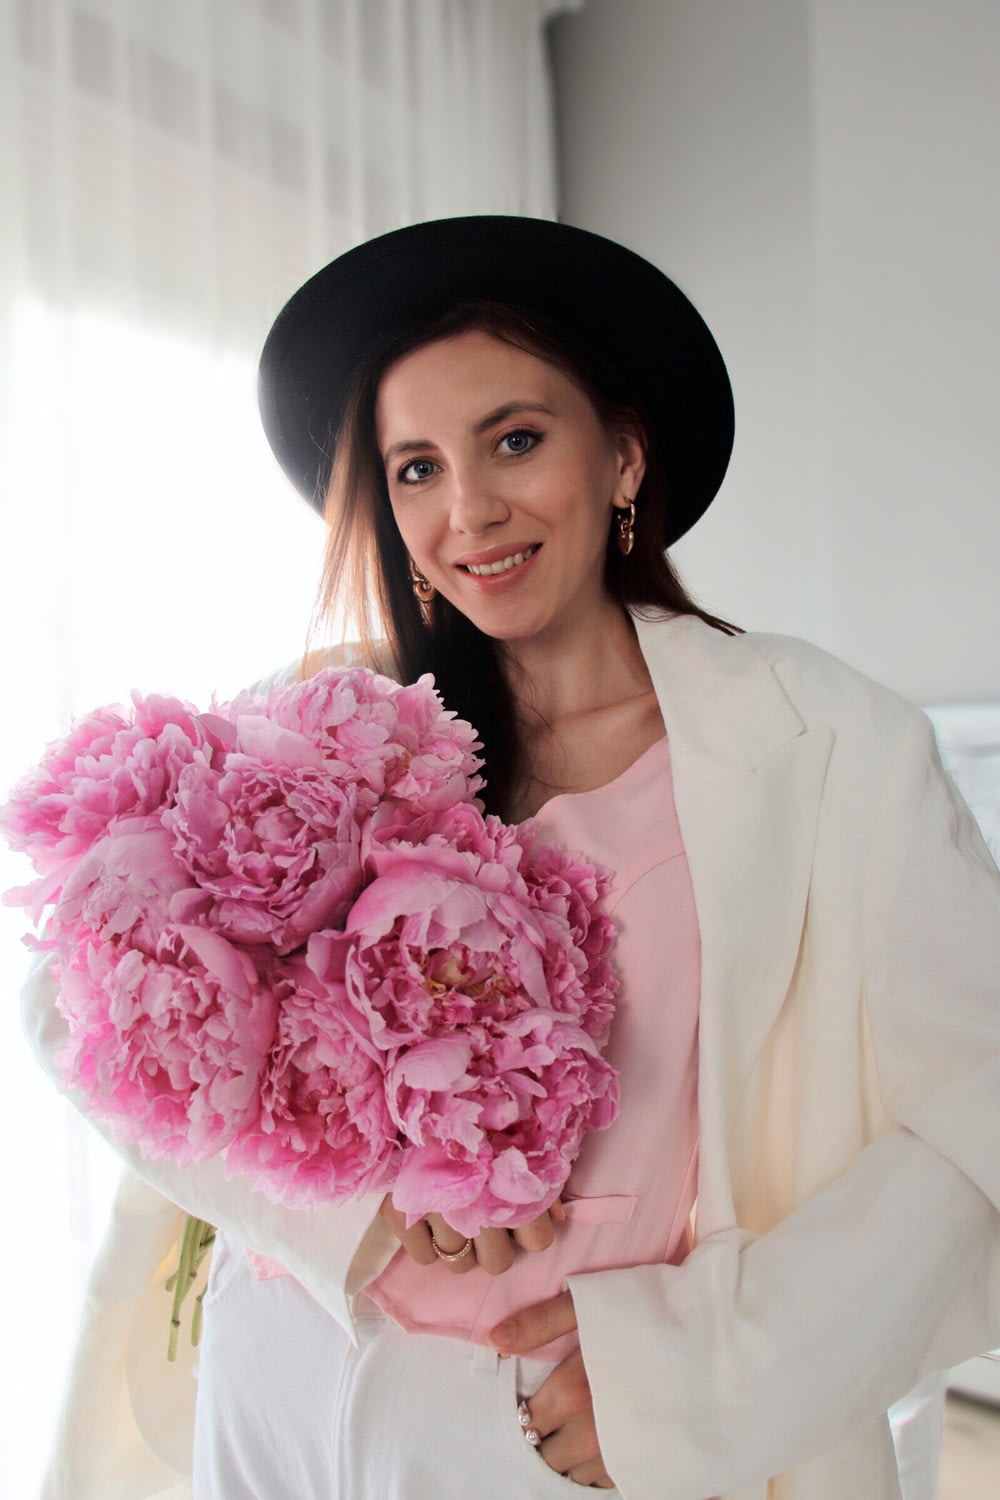 Una donna in un cappello che tiene un mazzo di fiori